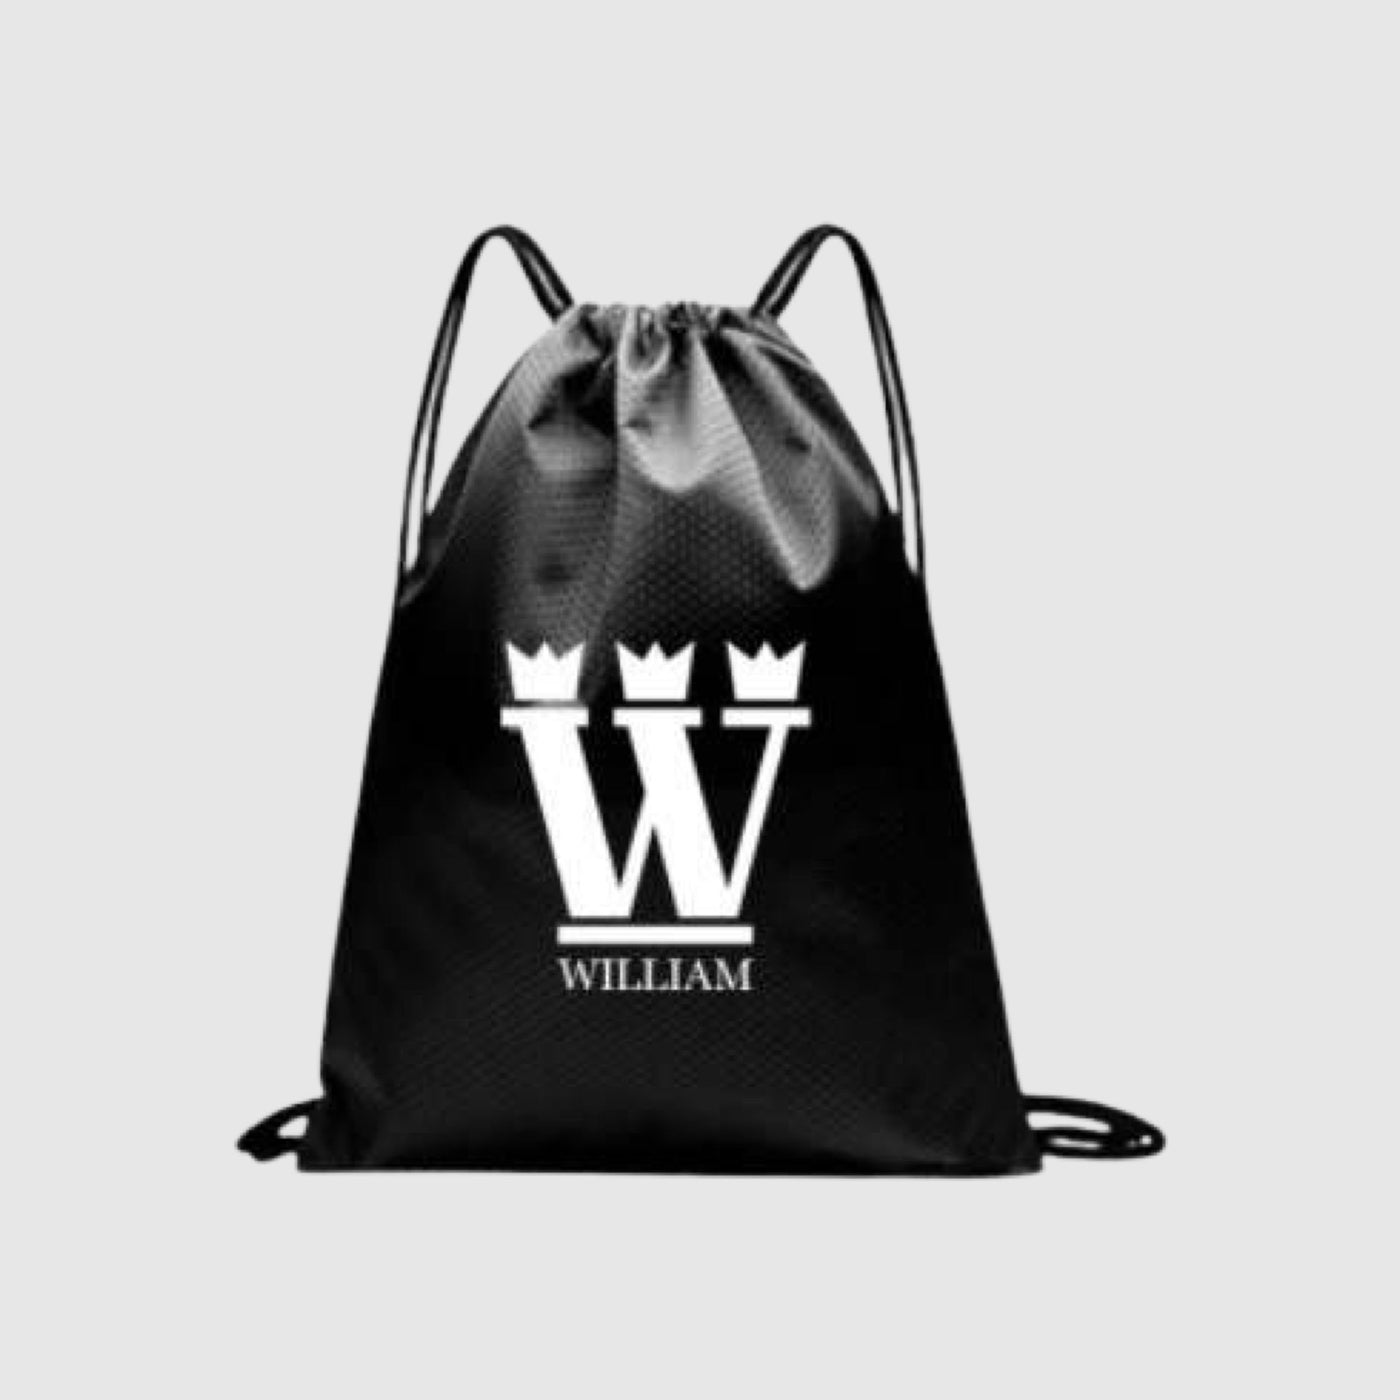 WILLIAM Bag Black - White